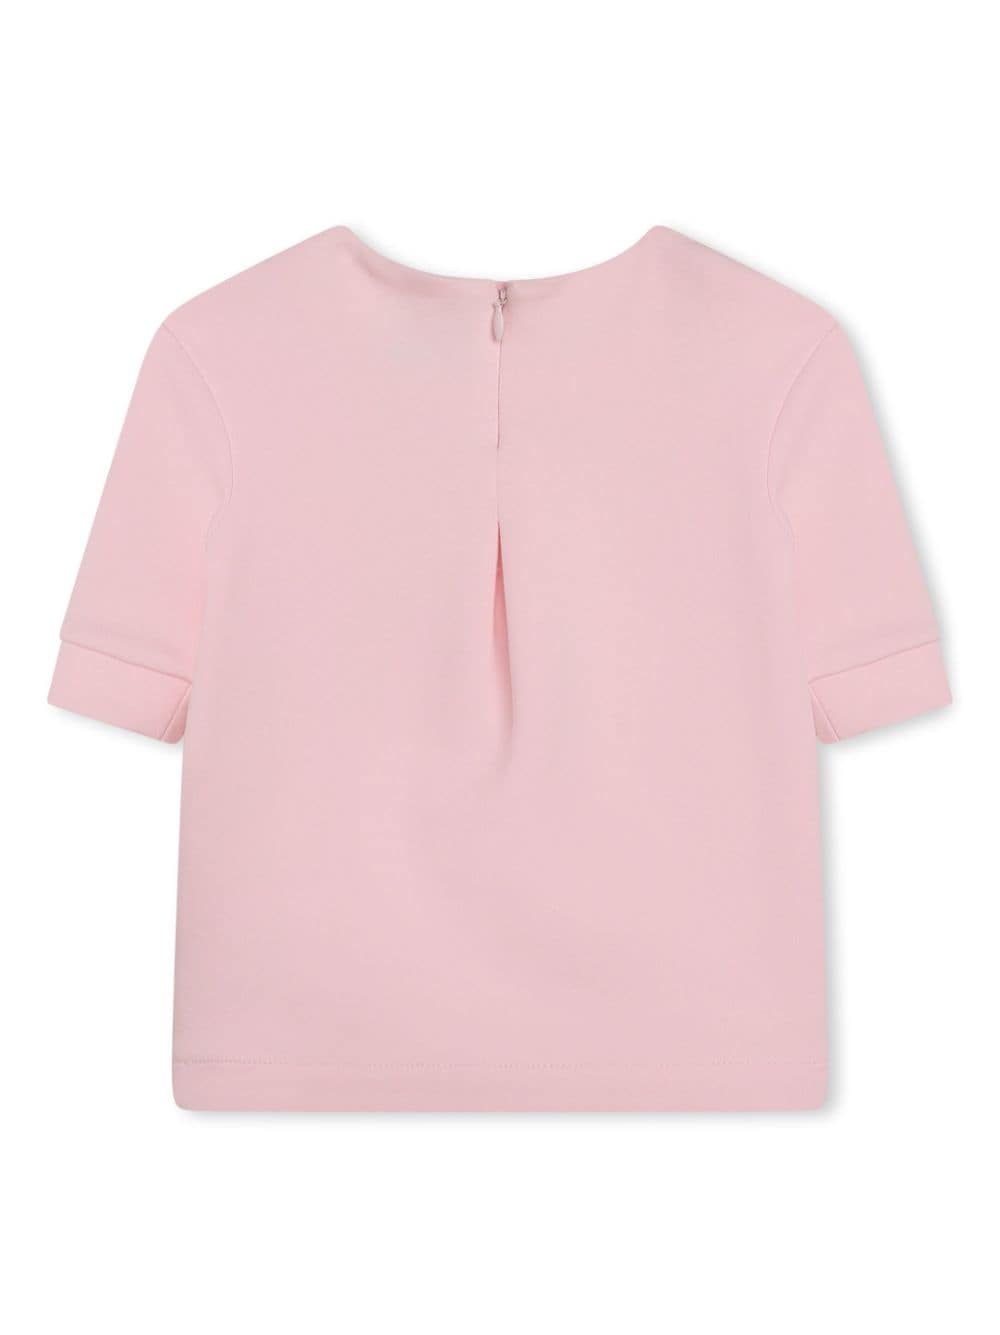 Choupette pink cotton blend baby girl KARL LAGERFELD dress | Carofiglio Junior